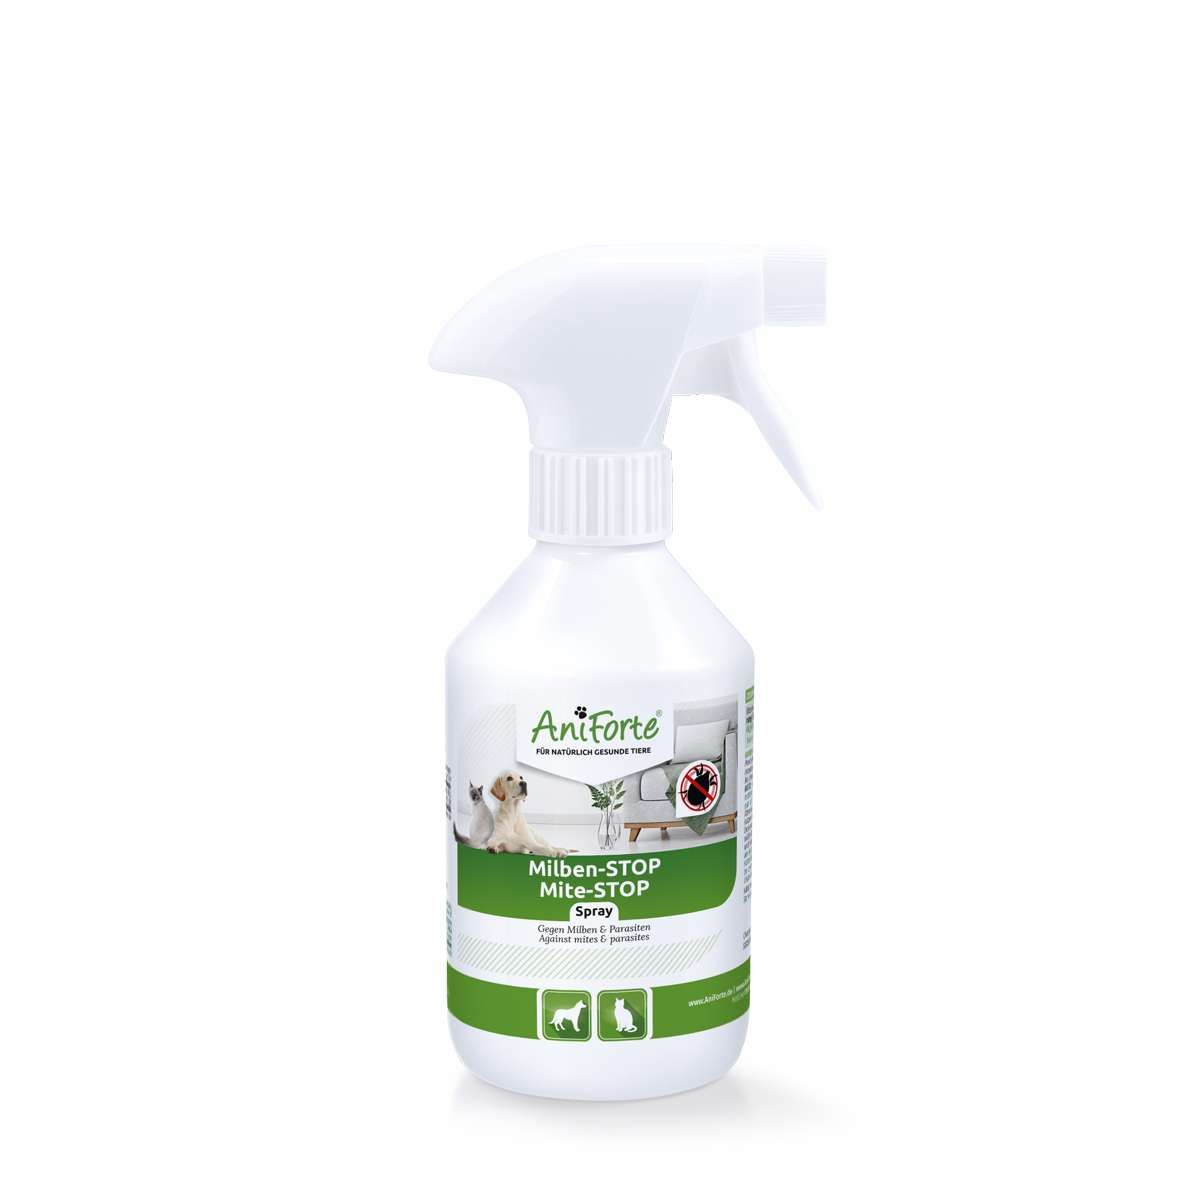 Milben-STOP Spray für Hunde, Katzen, Pferde & Co. - AniForte®